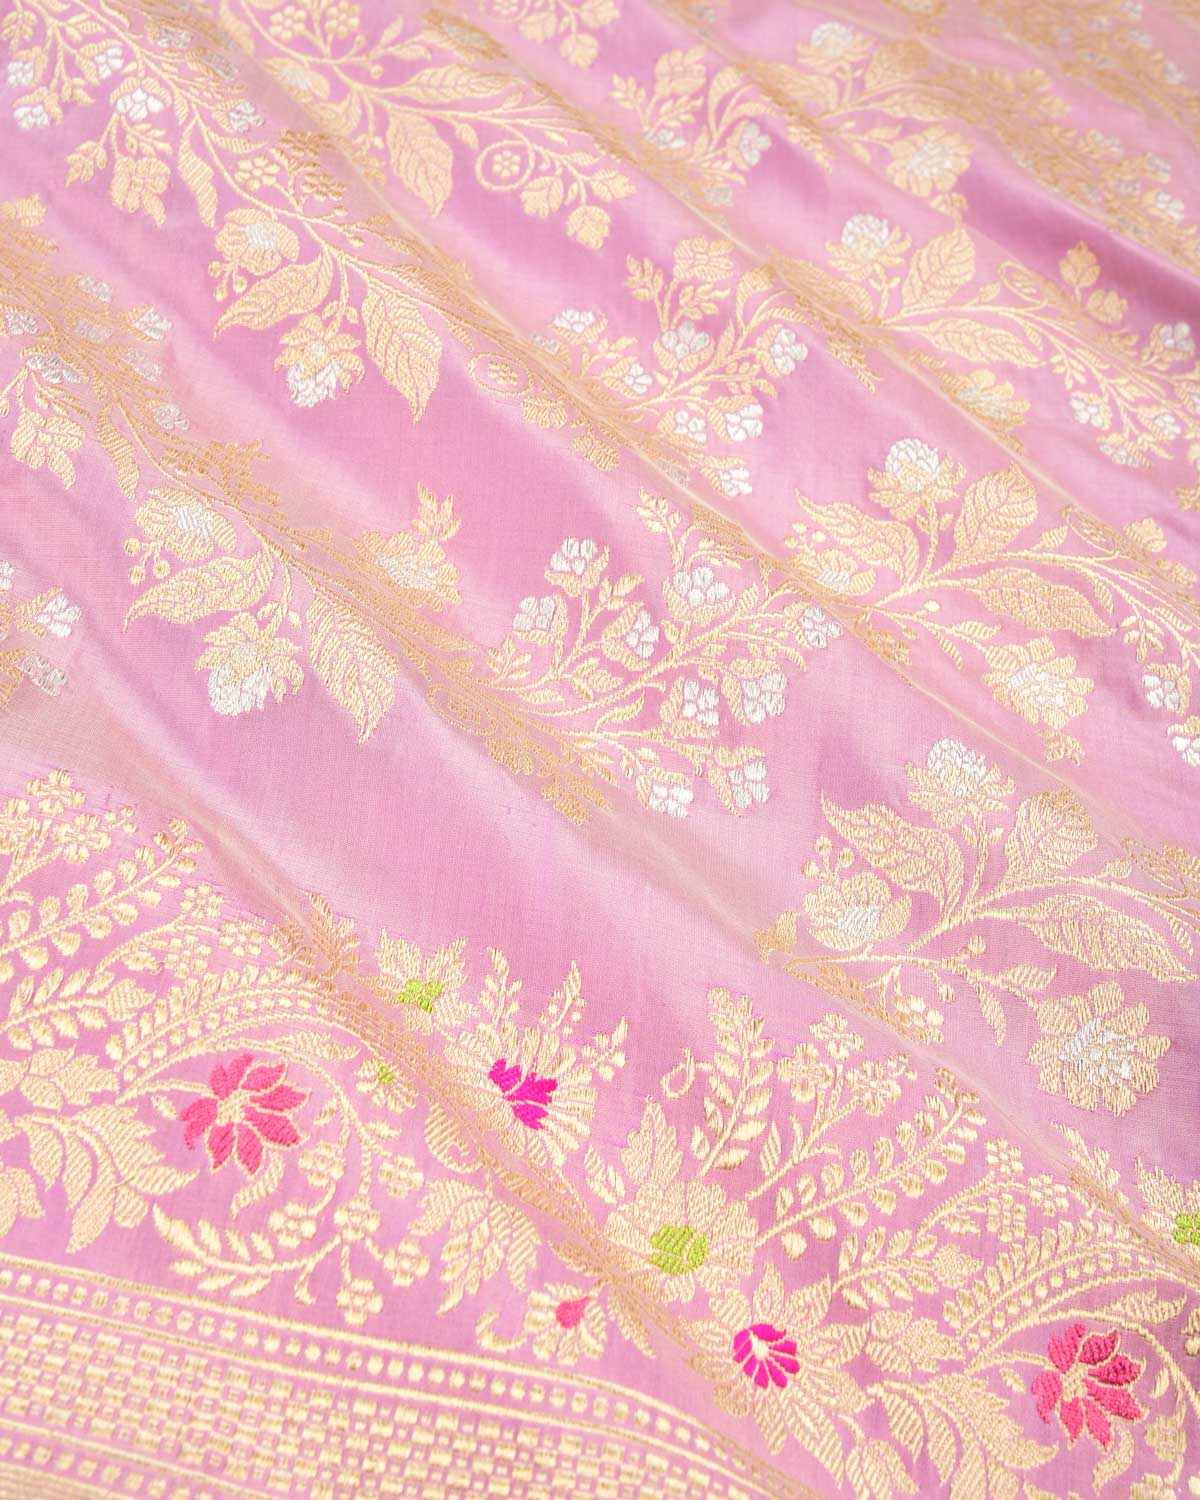 Mauve Banarasi Gold & Silver Zari Floral Jaal Kadhuan Brocade Handwoven Katan Silk Saree - By HolyWeaves, Benares